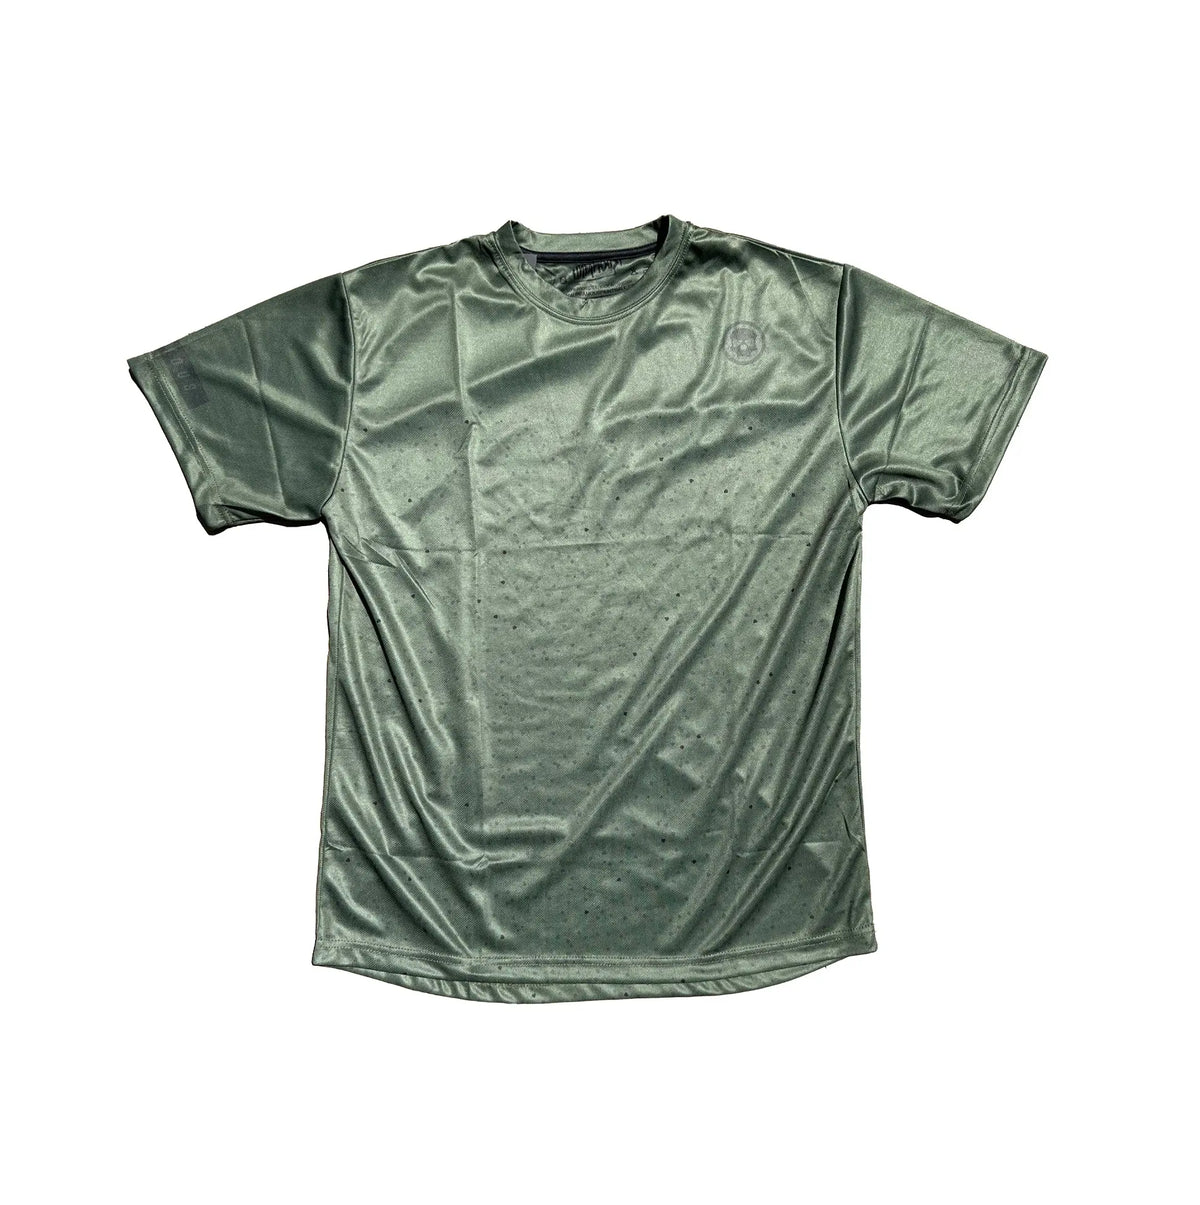 DryFit Tech T-Shirt - Spec Infamous Paintball